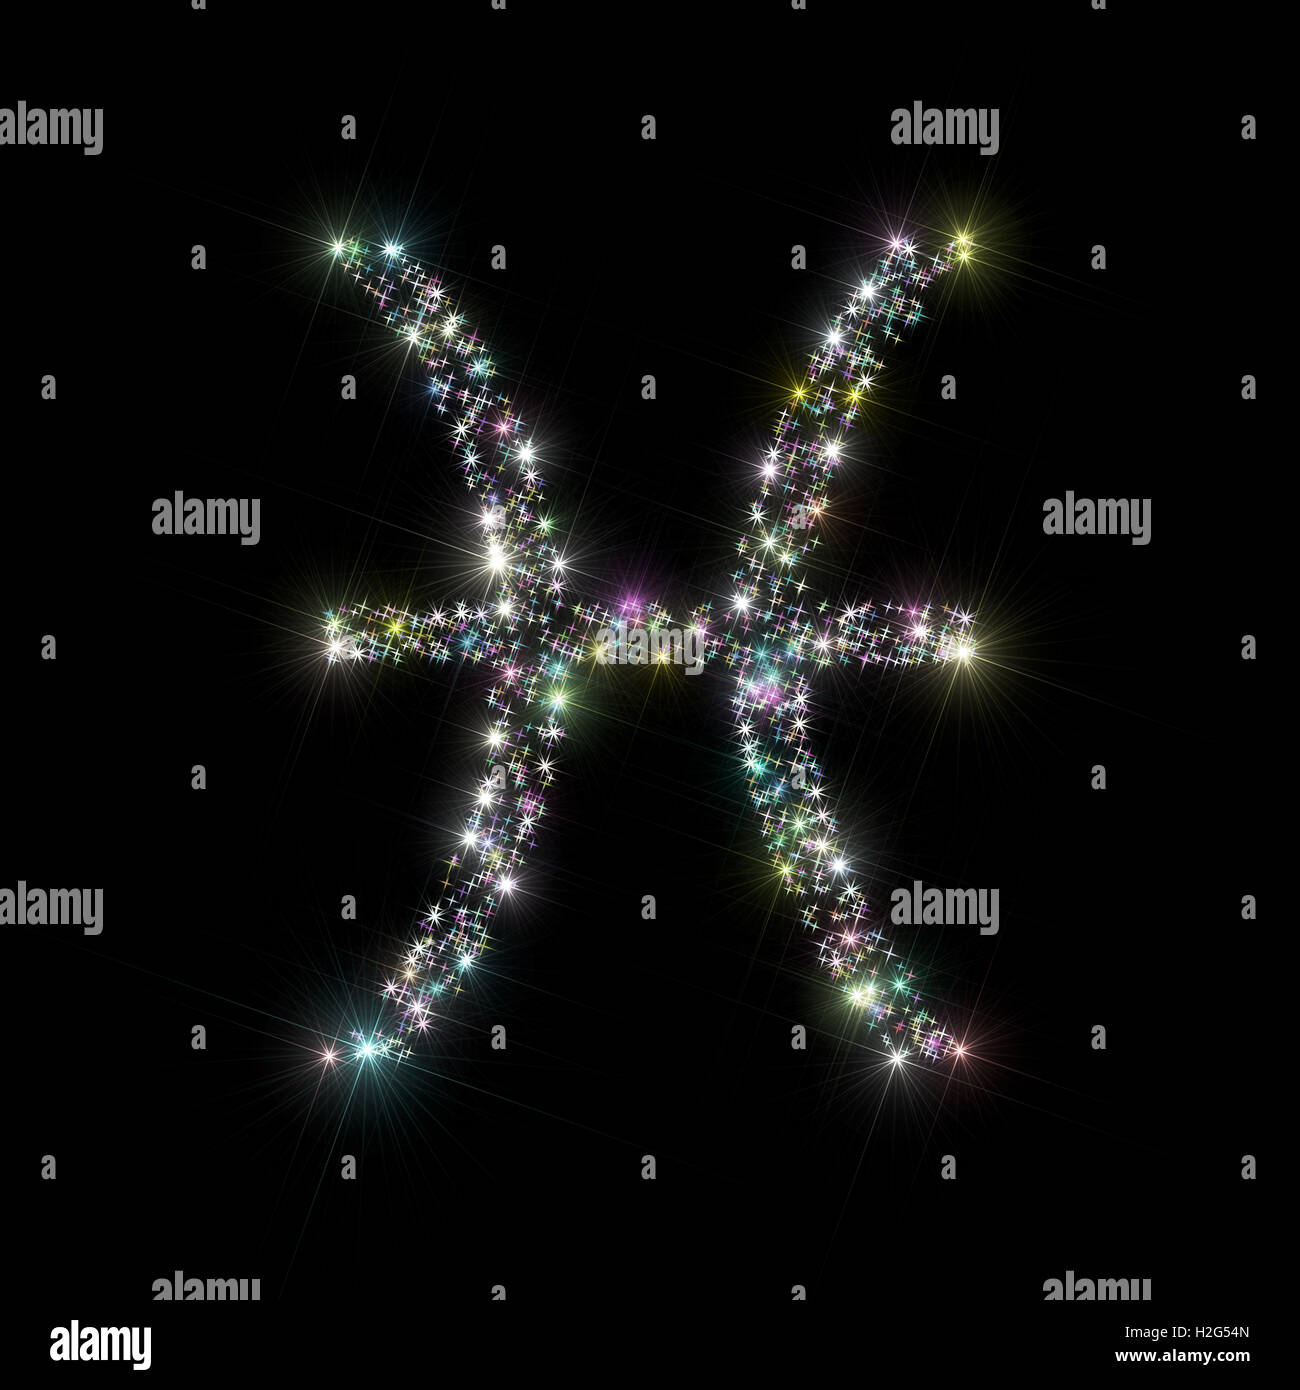 Sfondo astratto astronomia / illustrazione di astrologia che rappresentano il segno zodiacale / simbolo per pesci costellazione fatta di stelle Foto Stock